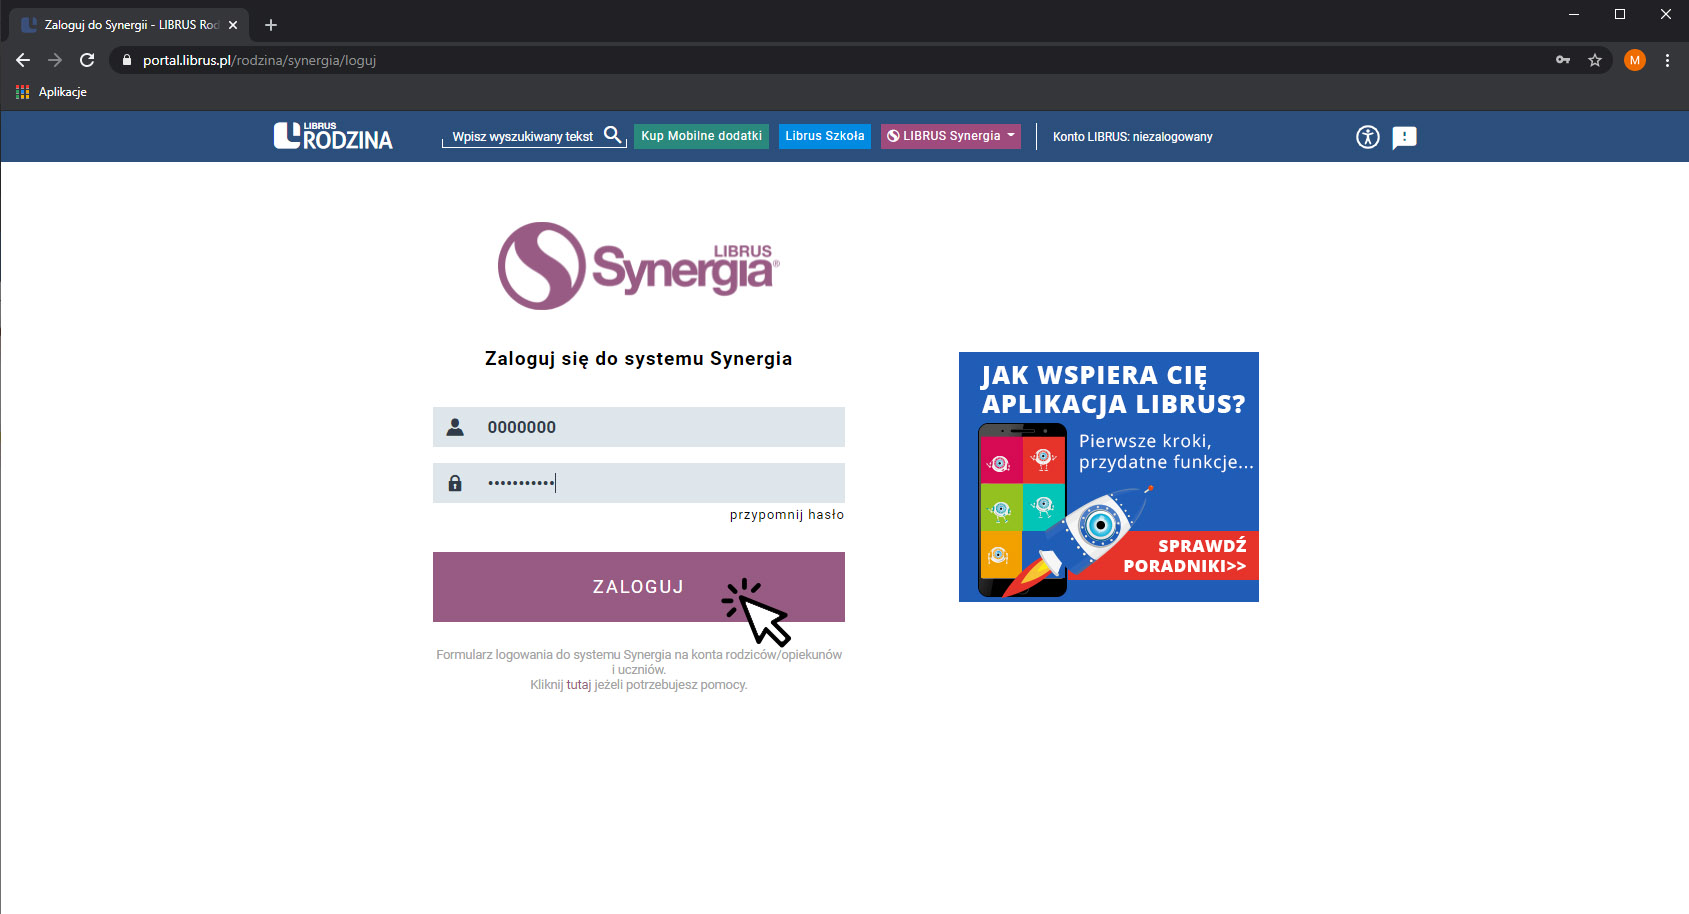 Obraz przedstawiający zrzut ekanu strony internetowej portal.librus.pl/rodzina/synergia/loguj, na której widoczne jest okno do logowania, w którym wpisuje się dane, login i hasło otrzymane ze szkoły. Na środku widoczna duża strzałka, umieszczona na napisie zaloguj.